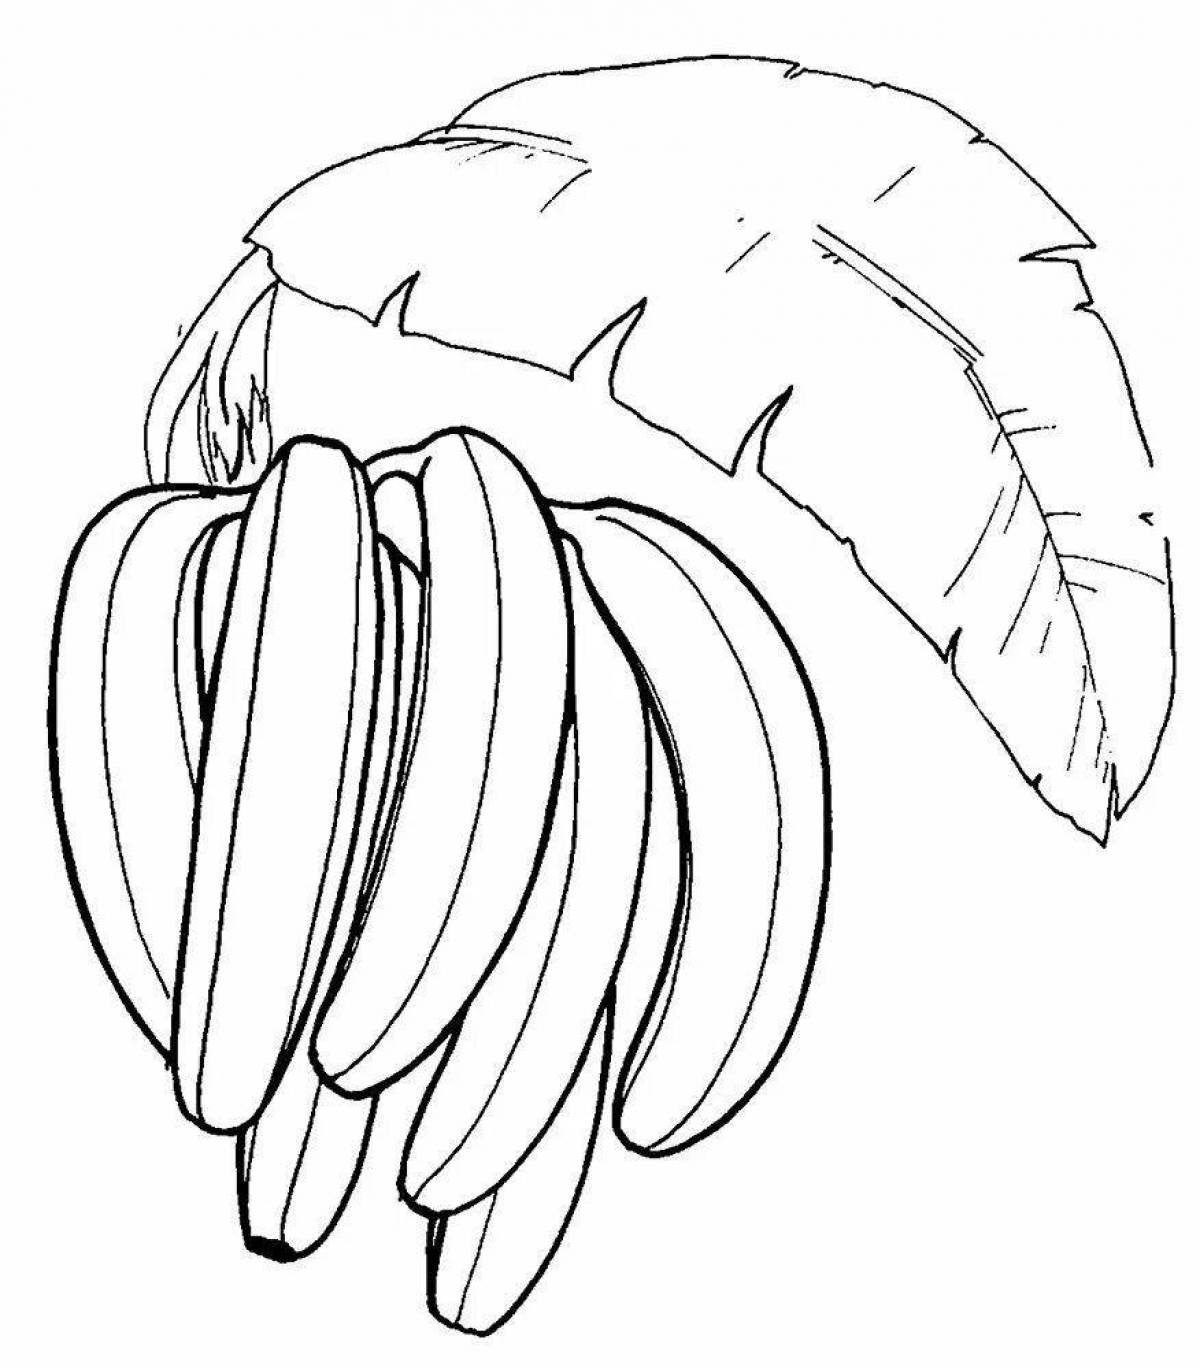 Увлекательная банановая раскраска для детей 2-3 лет